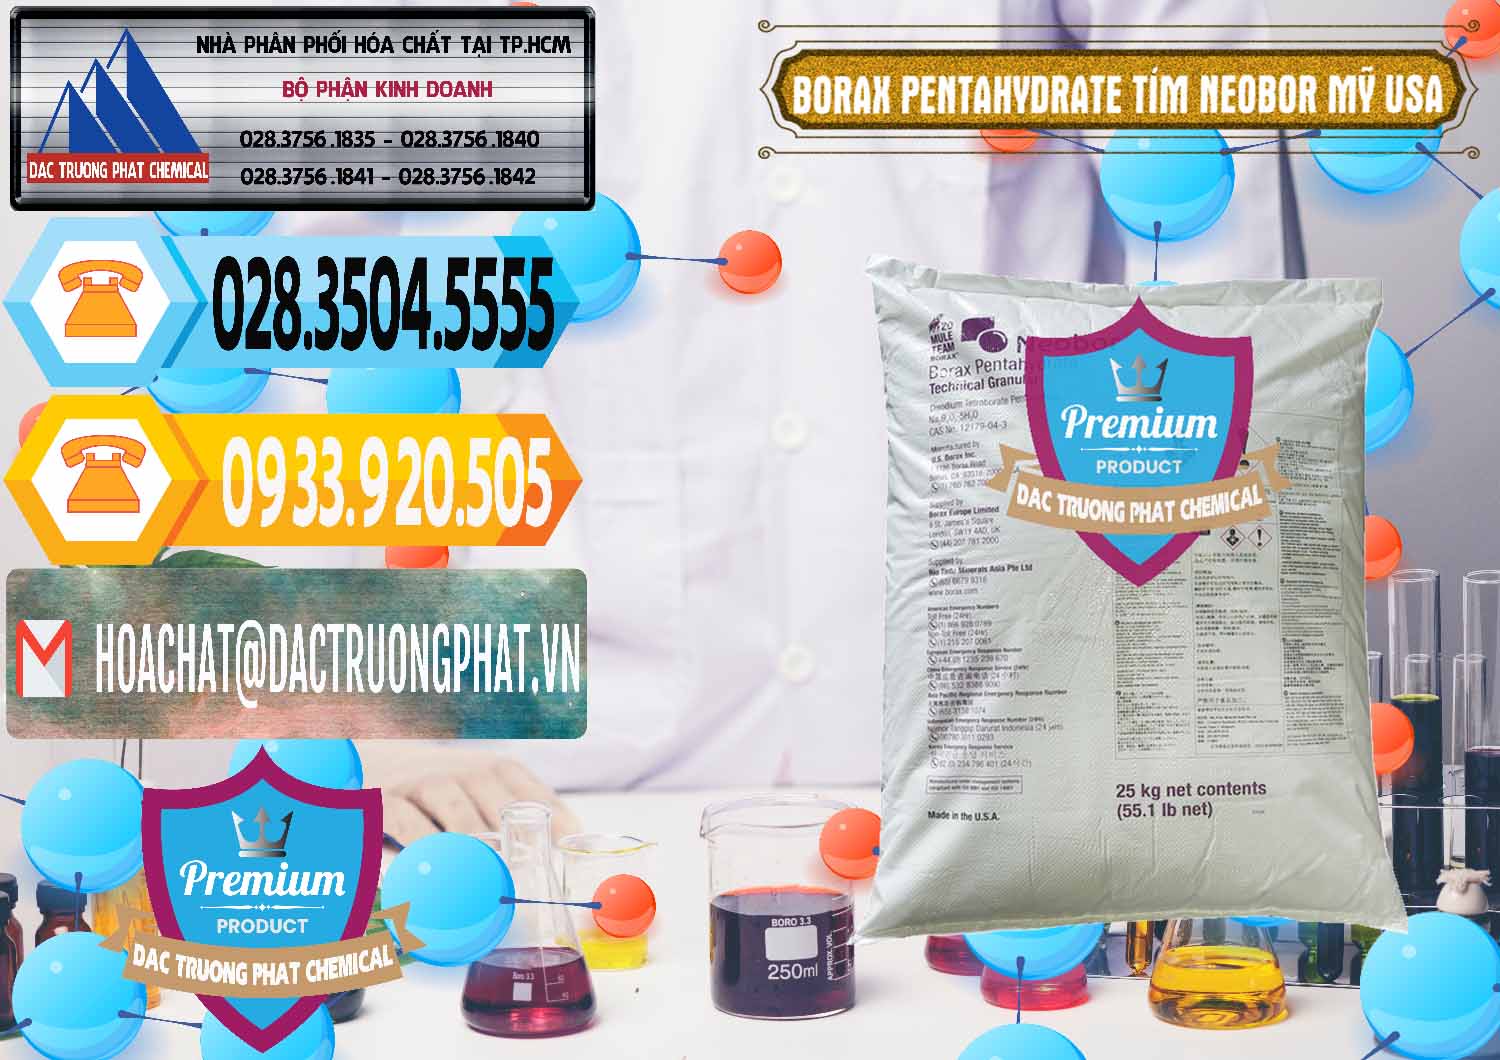 Nơi phân phối & bán Borax Pentahydrate Bao Tím Neobor TG Mỹ Usa - 0277 - Chuyên phân phối và nhập khẩu hóa chất tại TP.HCM - hoachattayrua.net